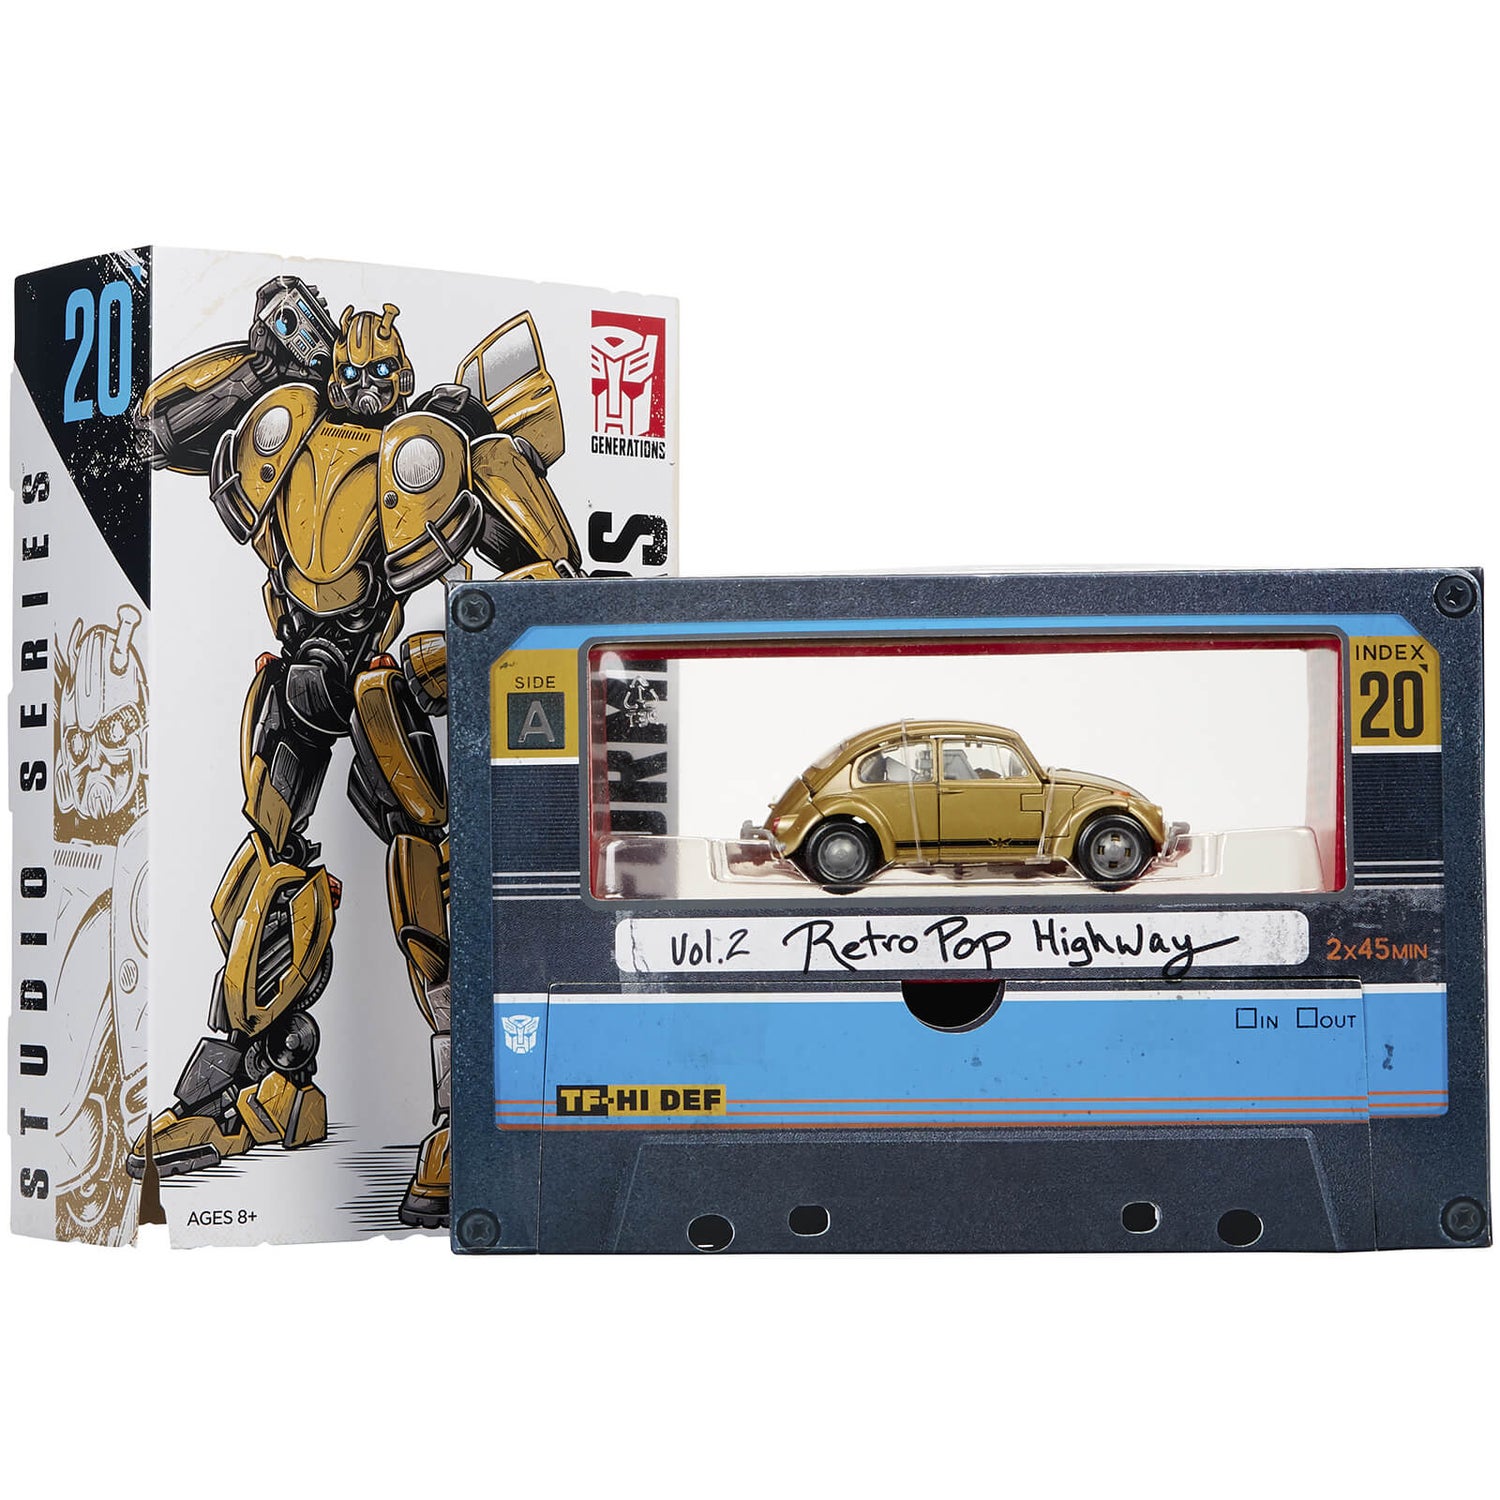 Highway　Beetle　Pop　Studio　Retro　20　Zavvi　Volkswagen　Gold　Bumblebee　Series　Merchandise　Hasbro　(日本)　Transformers:　Vol.